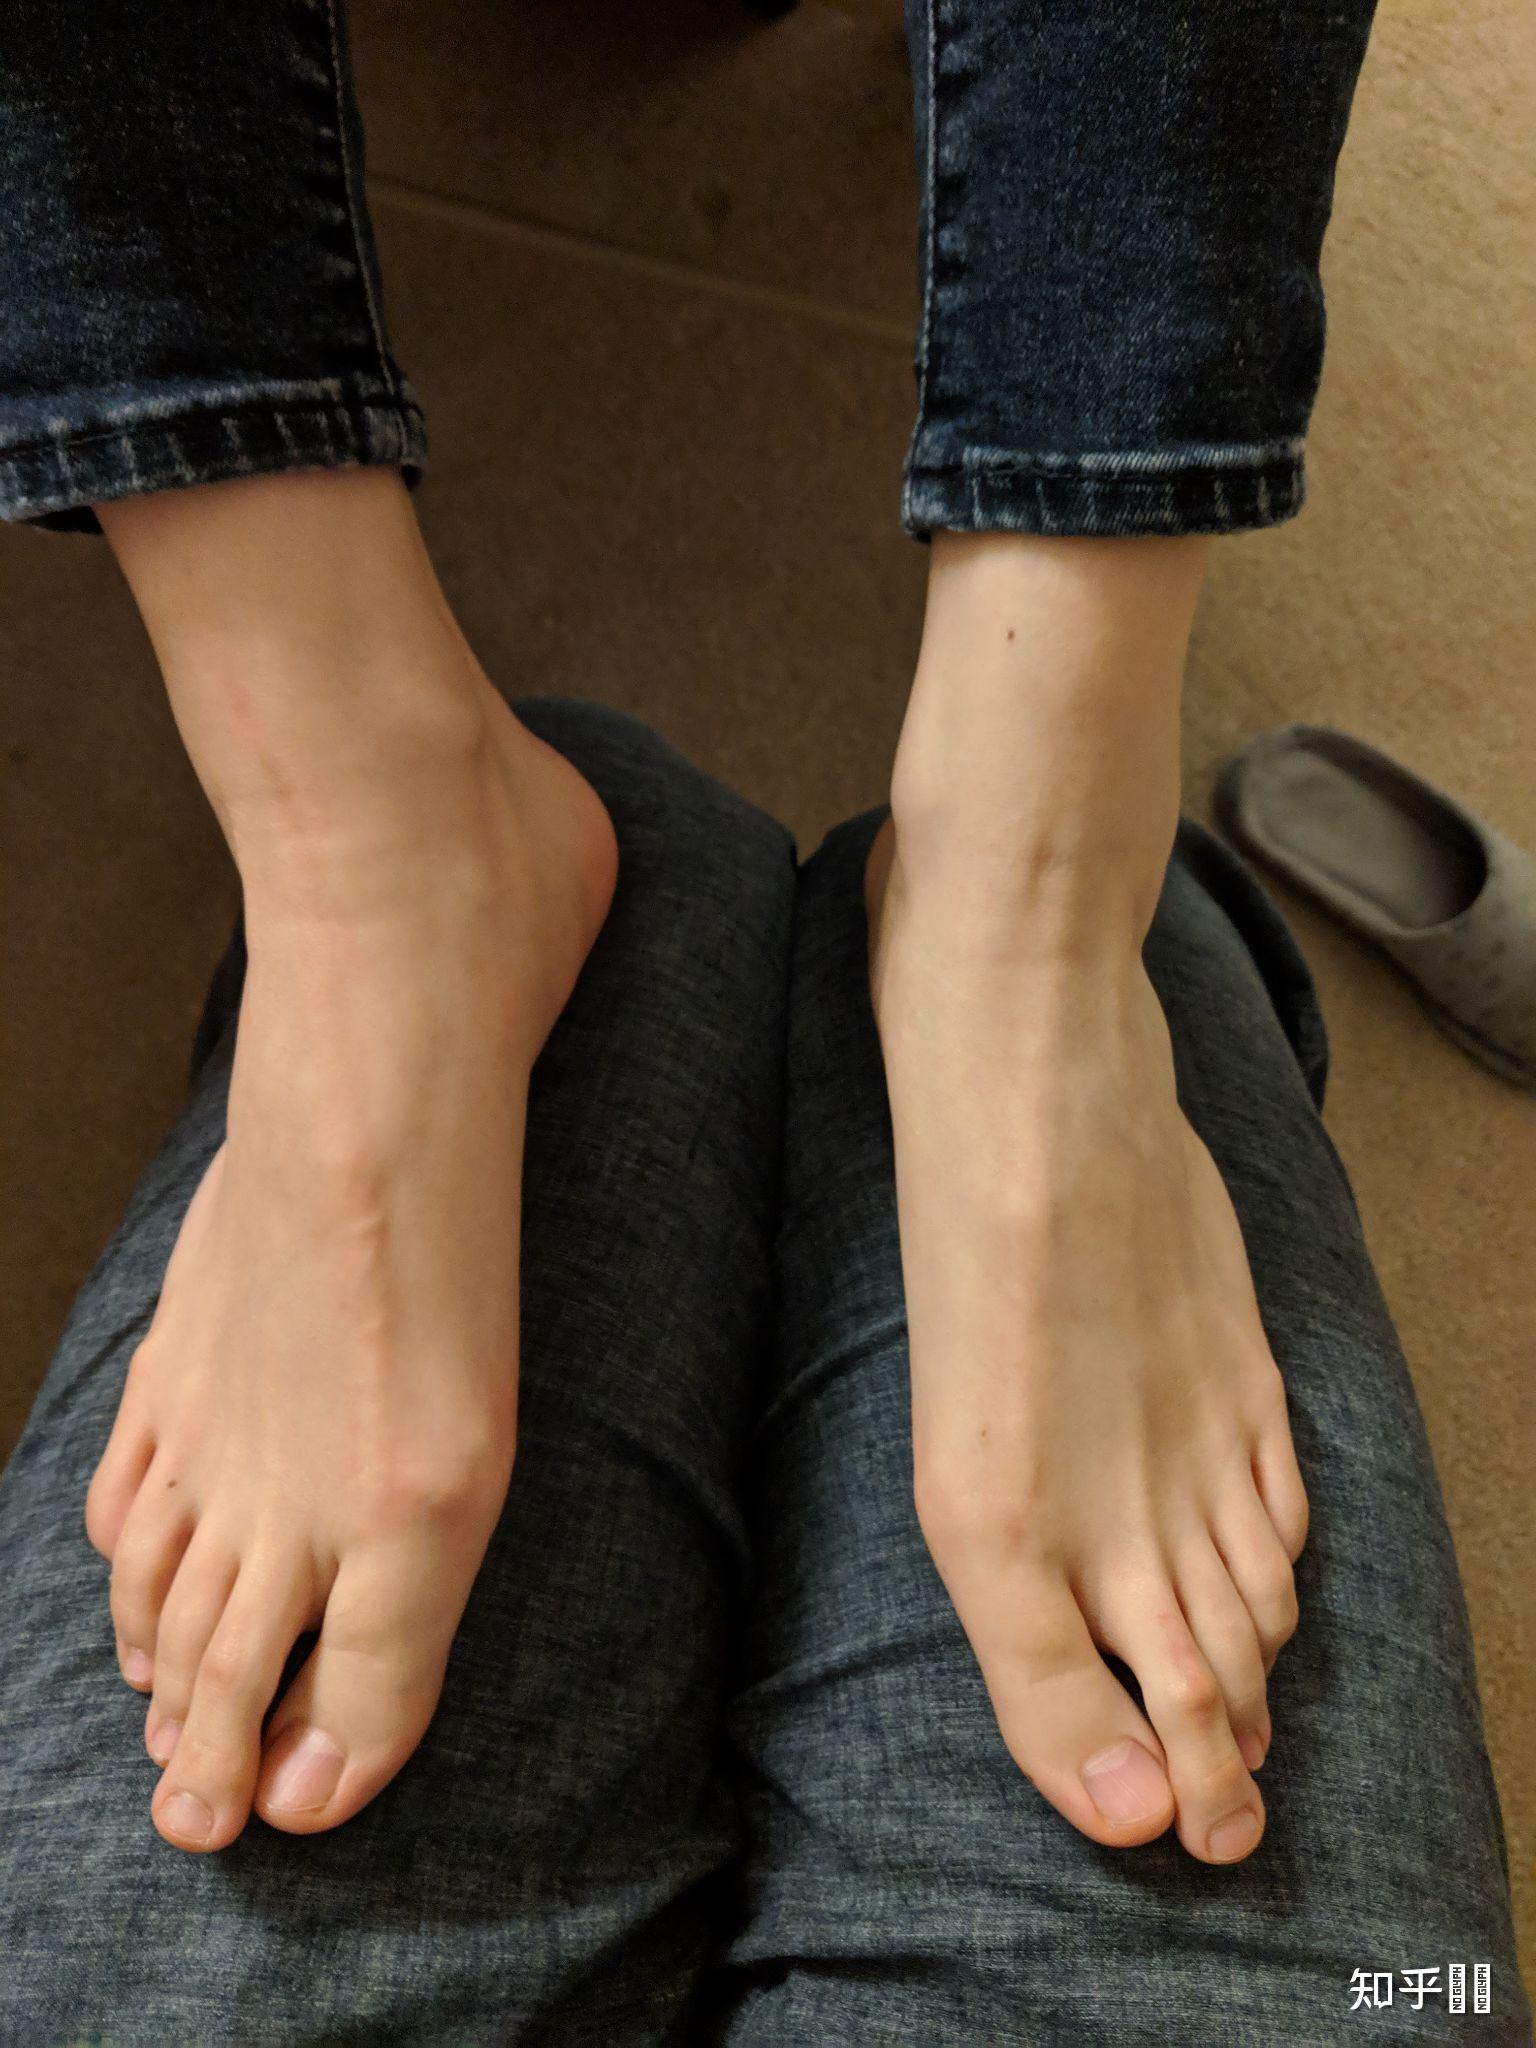 女孩子的脚趾很长是一种什么样的体验